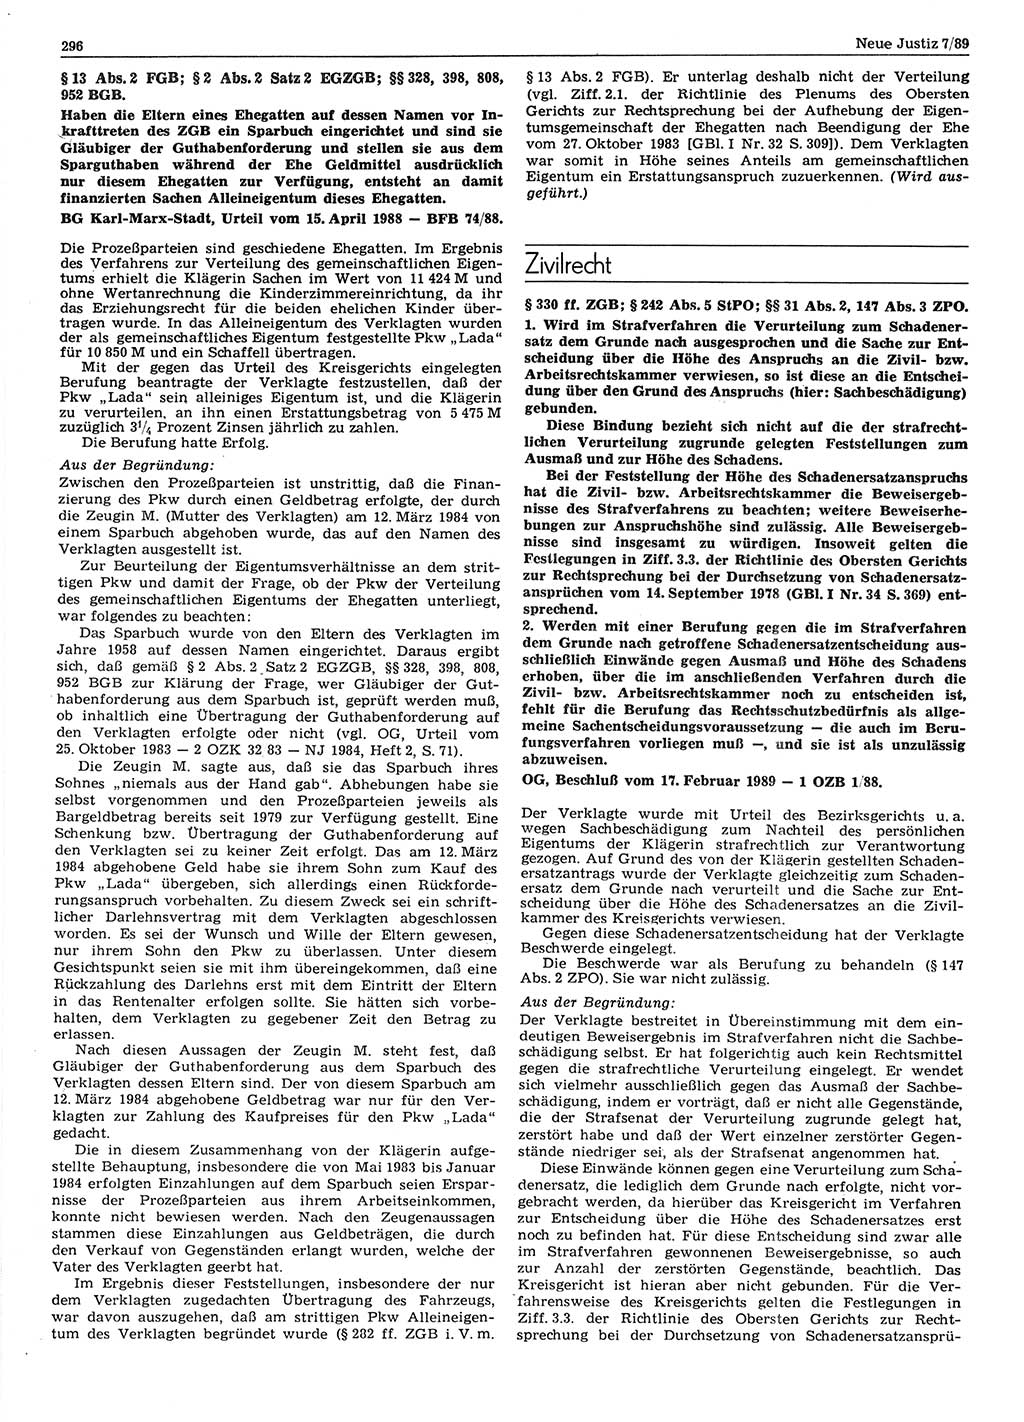 Neue Justiz (NJ), Zeitschrift für sozialistisches Recht und Gesetzlichkeit [Deutsche Demokratische Republik (DDR)], 43. Jahrgang 1989, Seite 296 (NJ DDR 1989, S. 296)